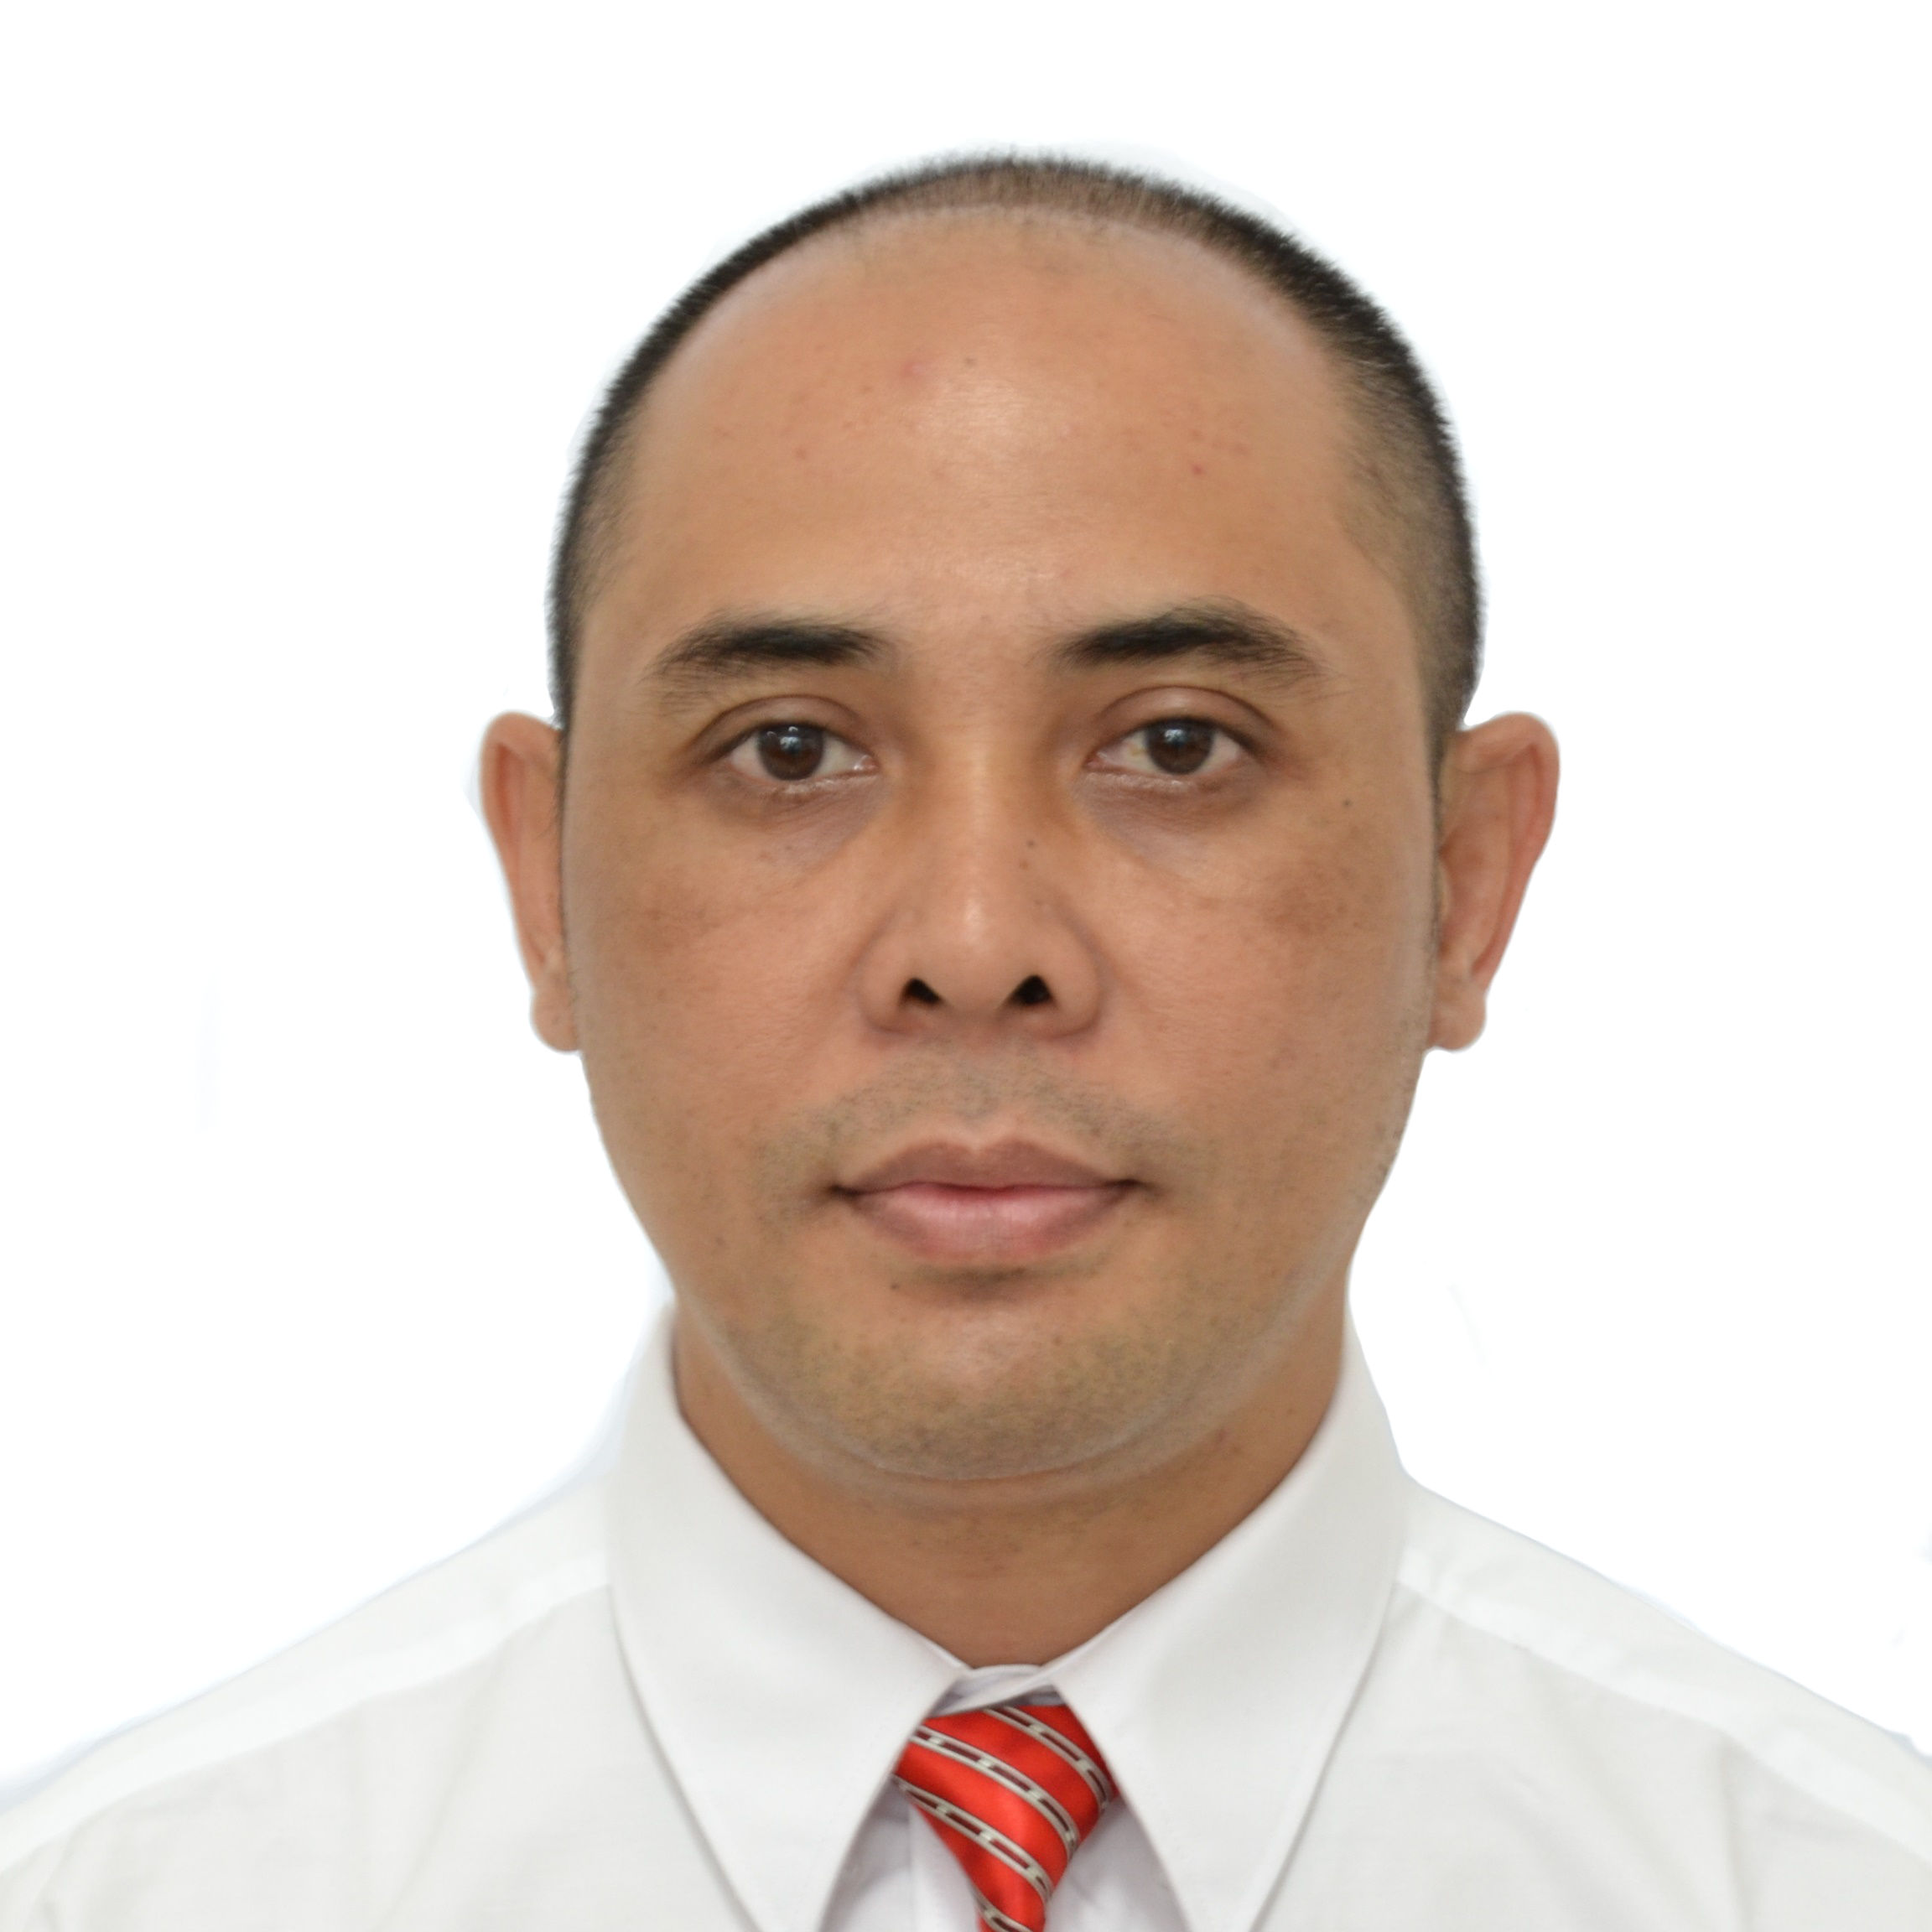 Dr. Ngurah Weda Sahadewa